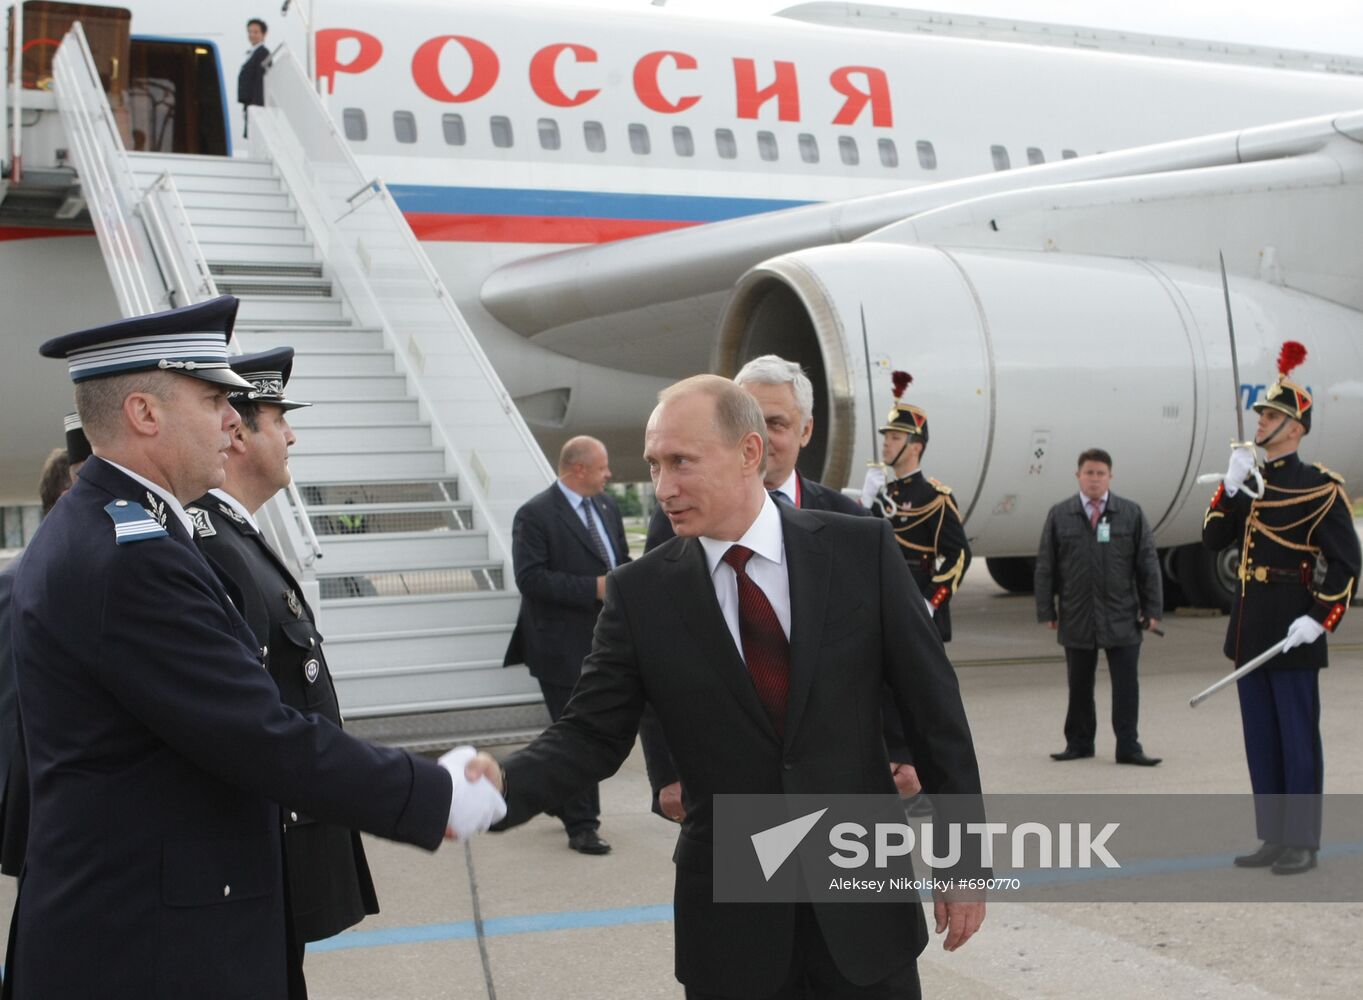 Vladimir Putin arrives in Paris